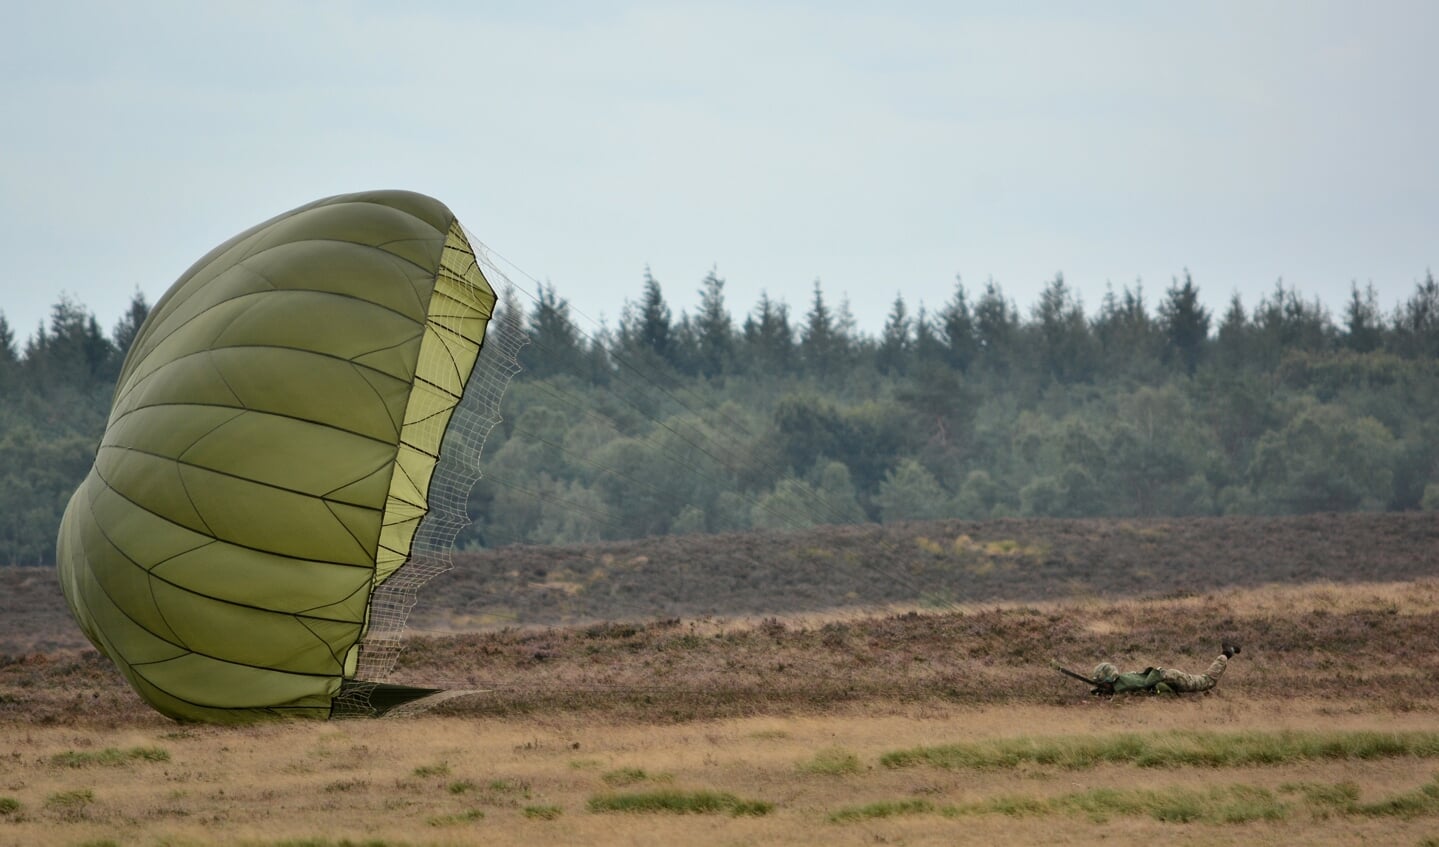 De parachute wordt door de harde wind over de heide getrokken